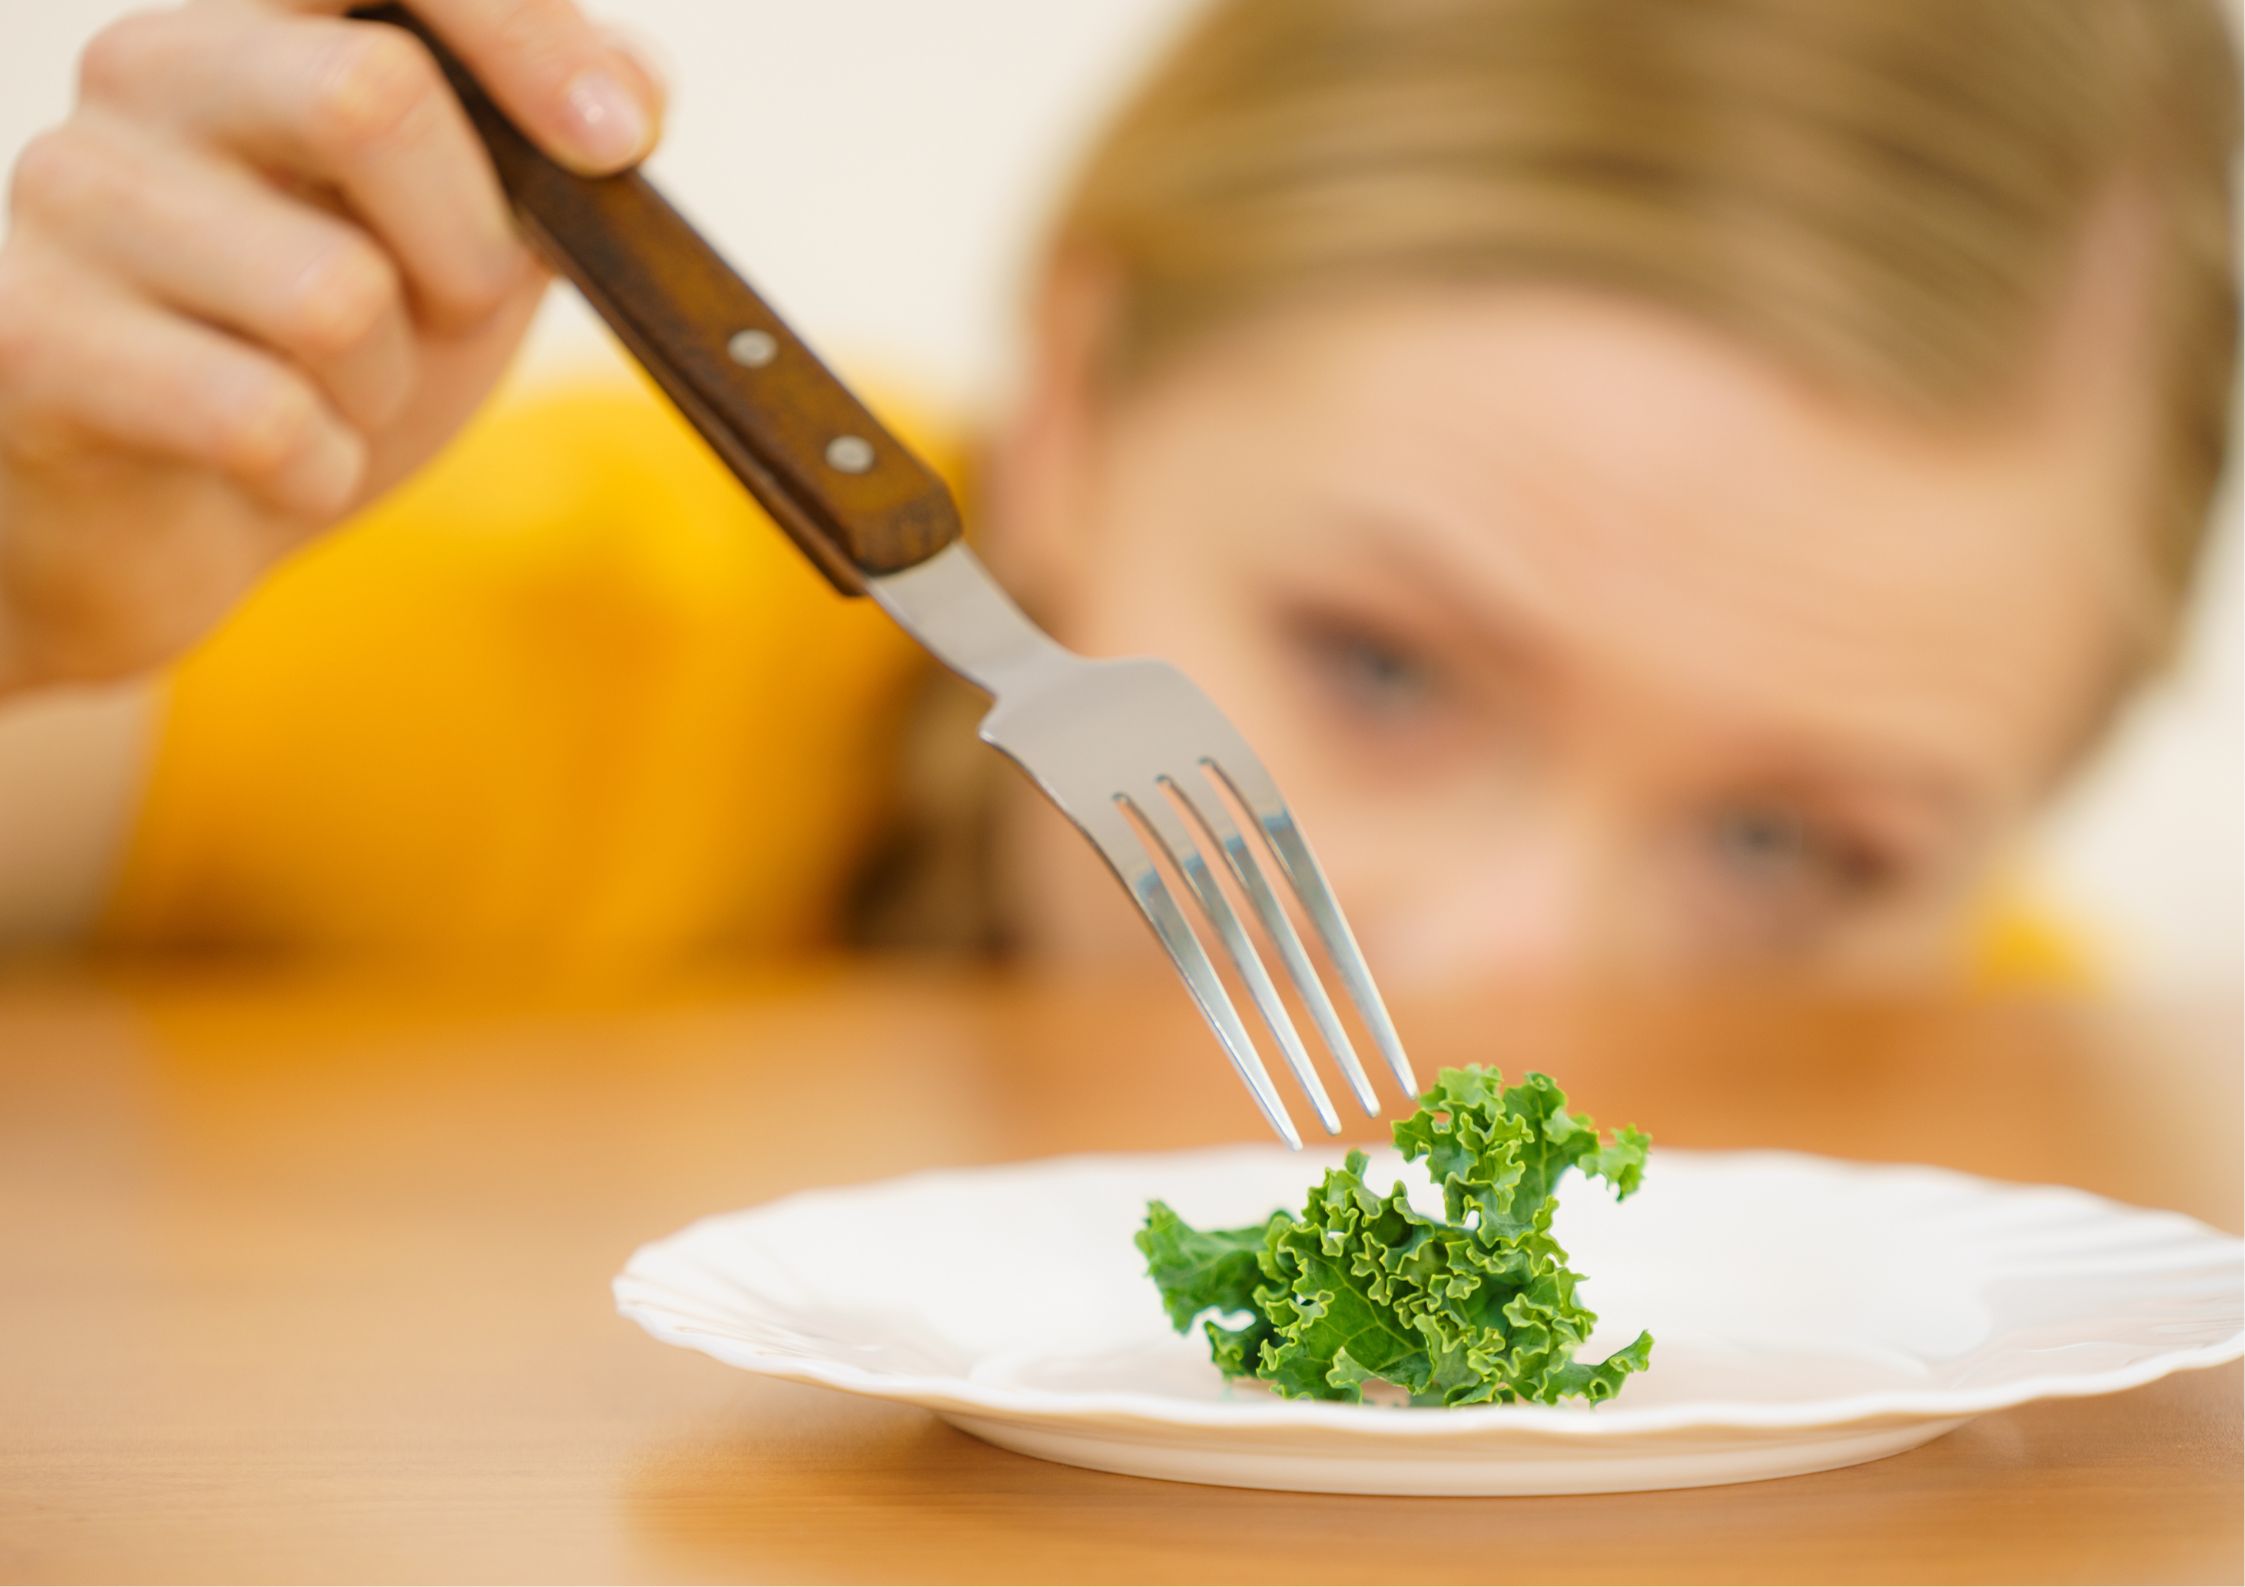 Quan la relació amb el menjar canvia: Trastorns de la conducta alimentària en l'adolescència